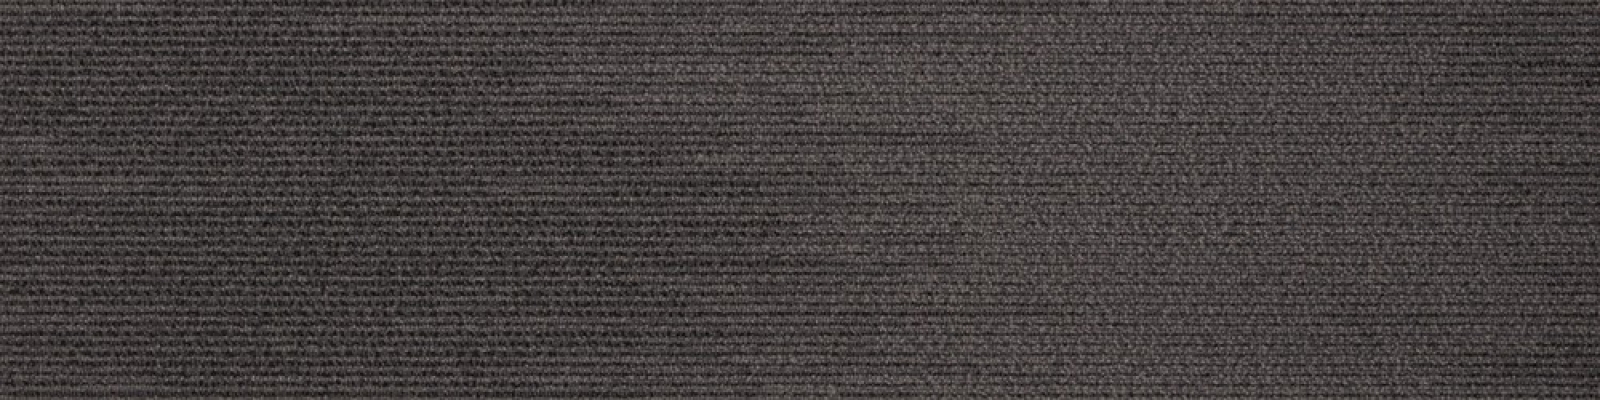 Carpet Tiles : Silver-Sea-05